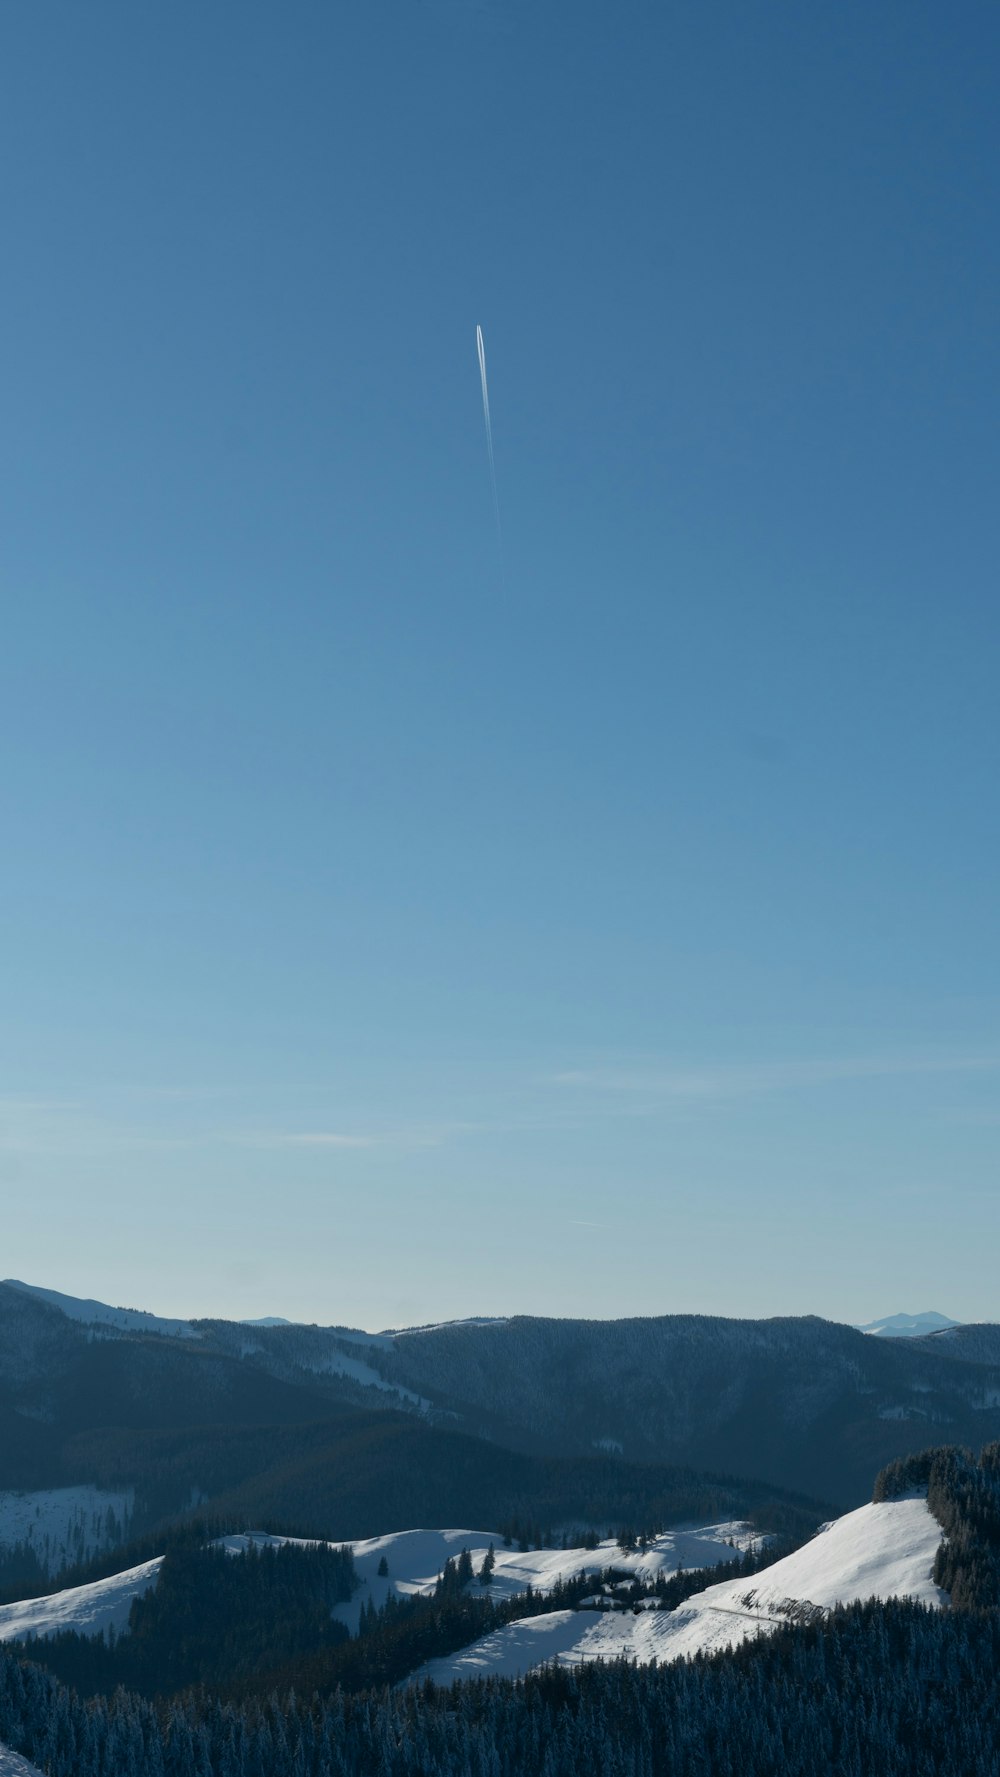 a clear blue sky over a snowy mountain range